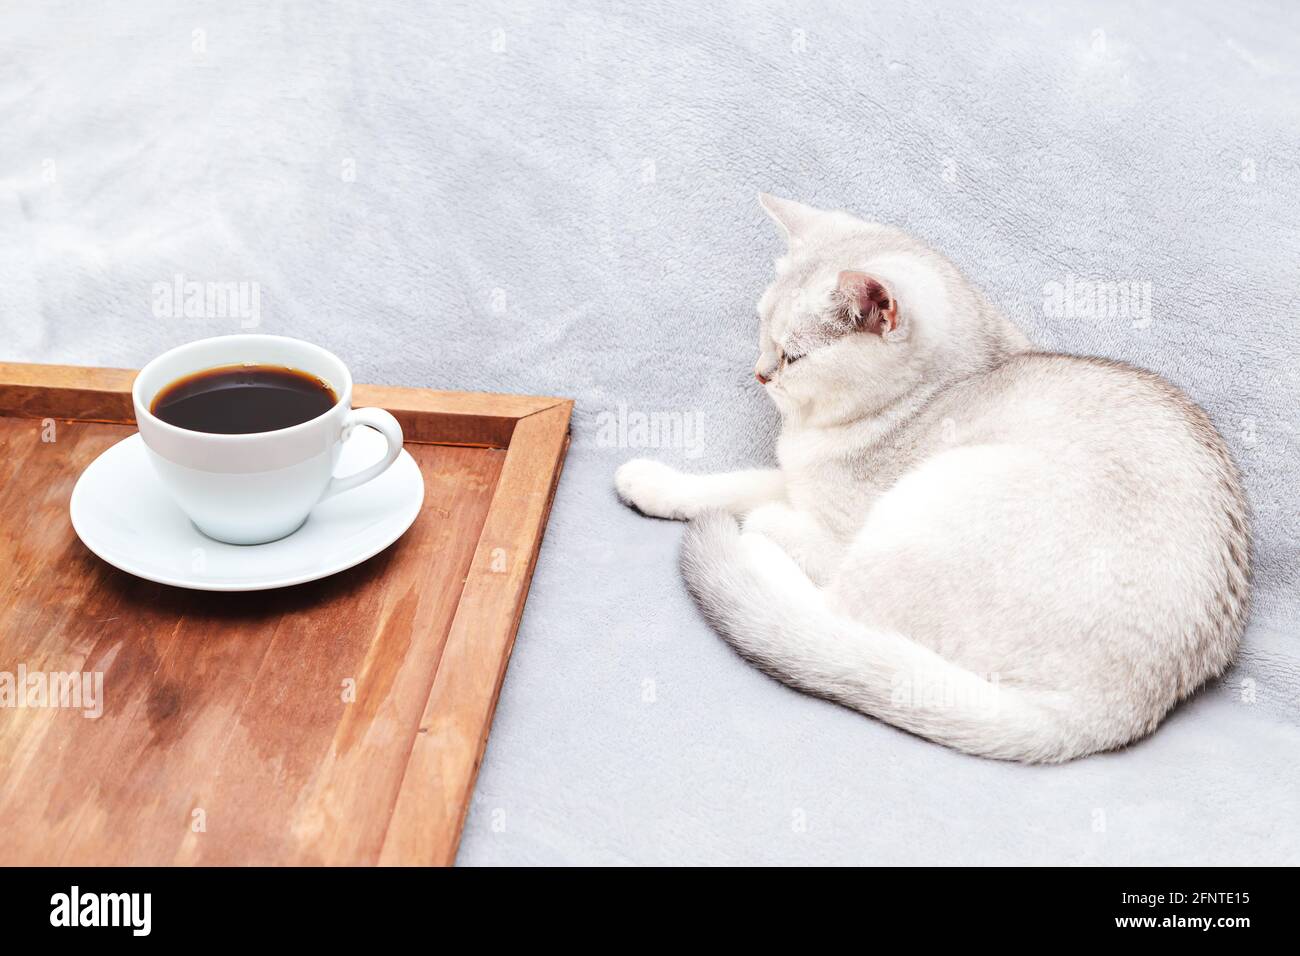 Die faule weiße britische Katze liegt auf dem Bett. Daneben befindet sich ein Tablett mit einer Tasse Kaffee. Am frühen Morgen. Stockfoto